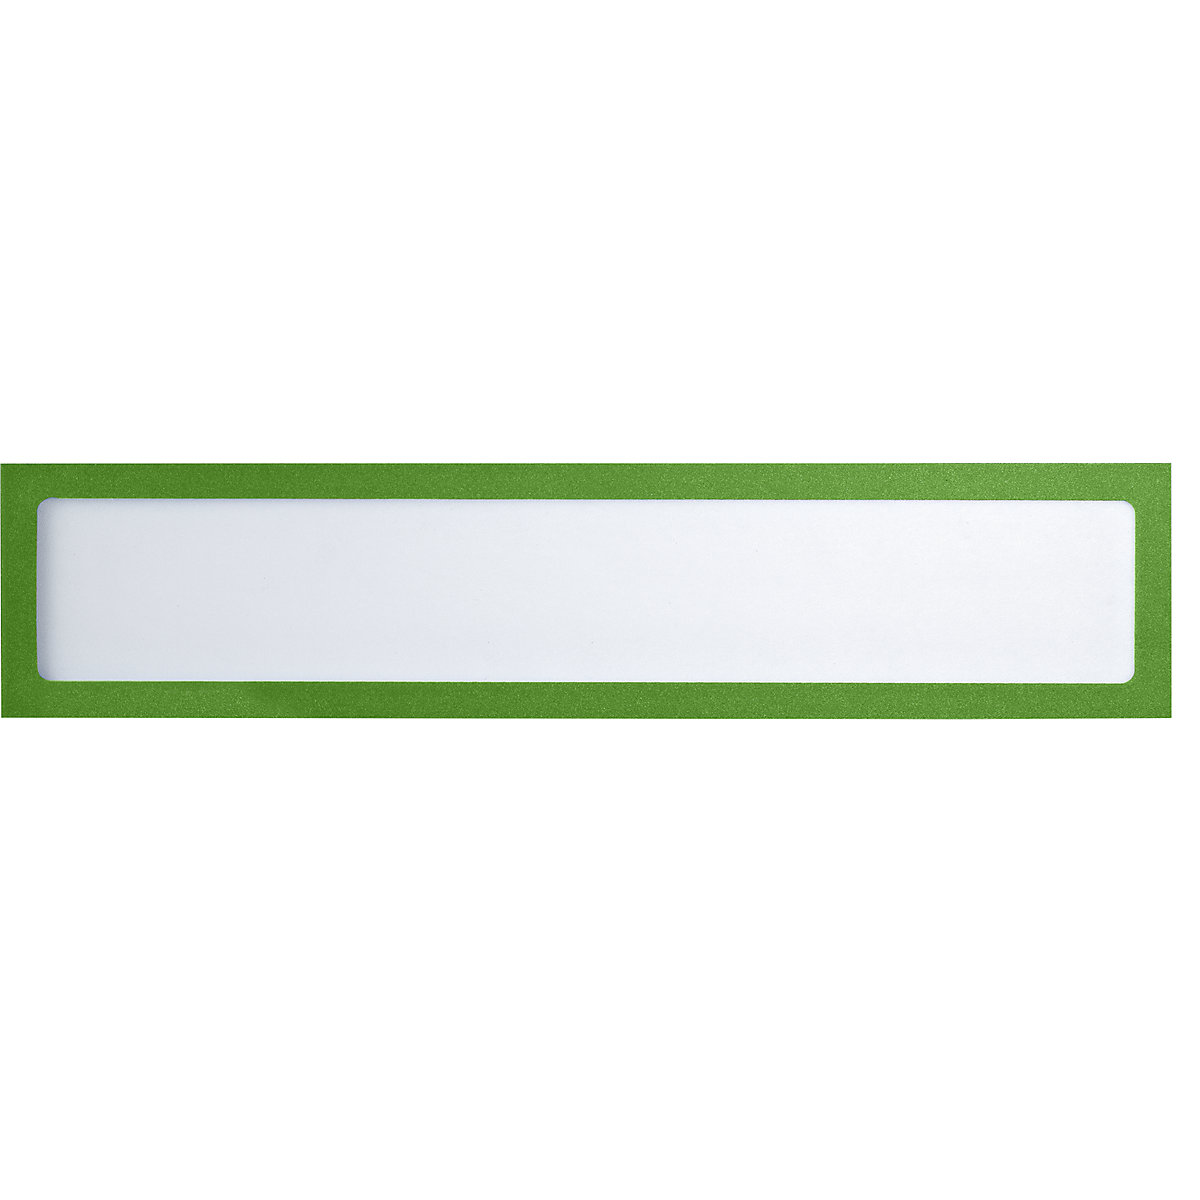 Busta portastampati magnetica – eurokraft basic, per elementi di testo, UNI A4 in orizzontale / UNI A5 in verticale, 312 x 60 mm, telaio verde, conf. 10 pz.-4